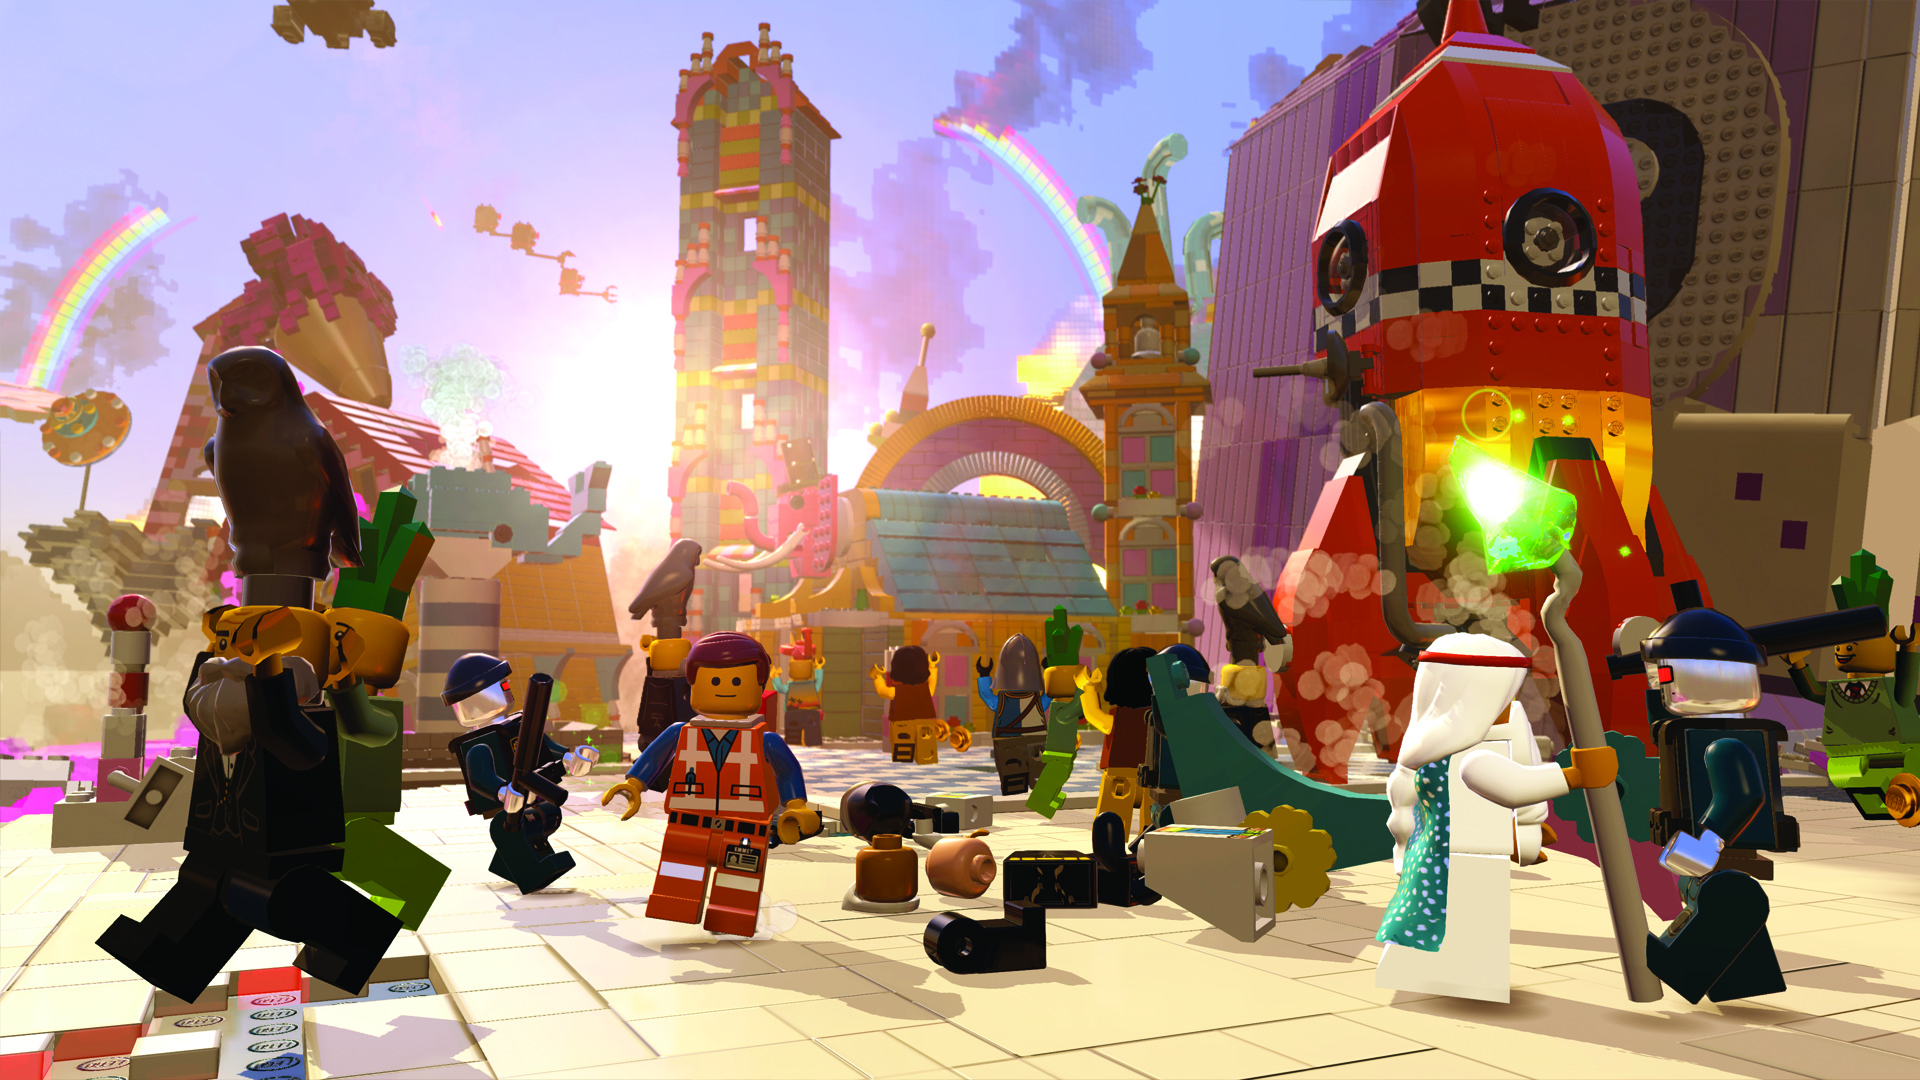 Dominerende Hændelse, begivenhed Regnbue Save 75% on The LEGO® Movie - Videogame on Steam